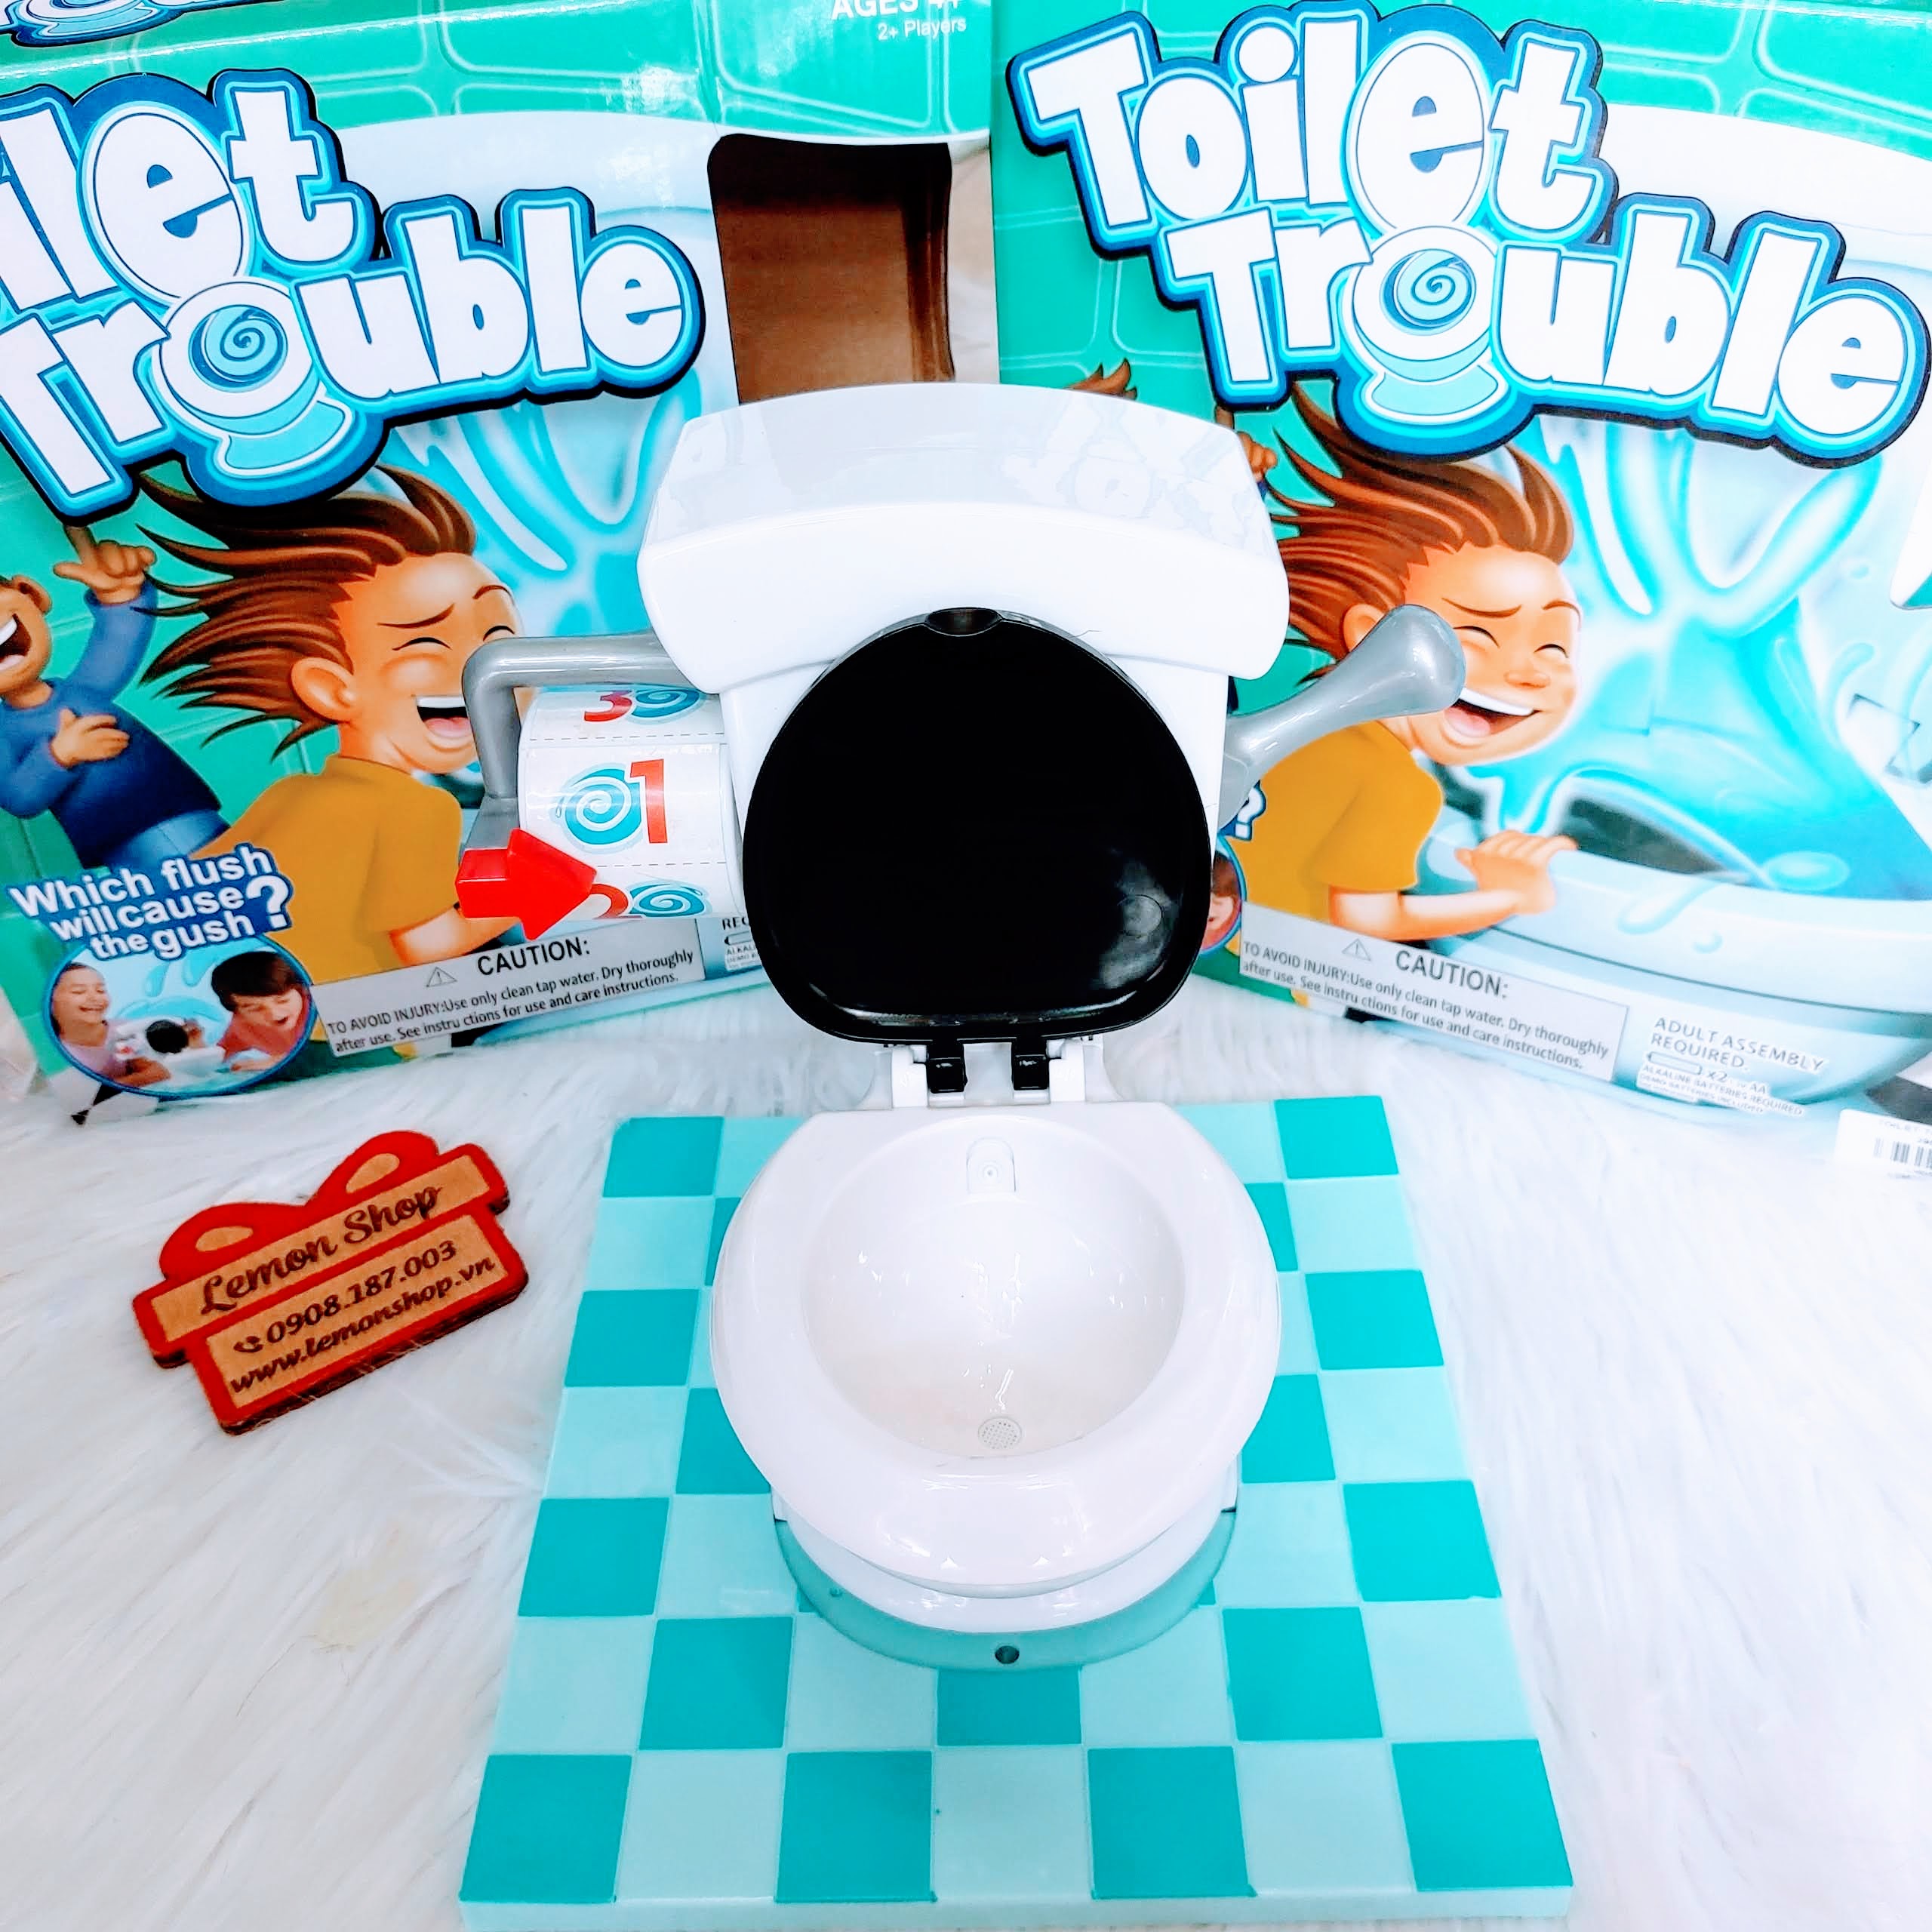 toileet trouble (1).jpg